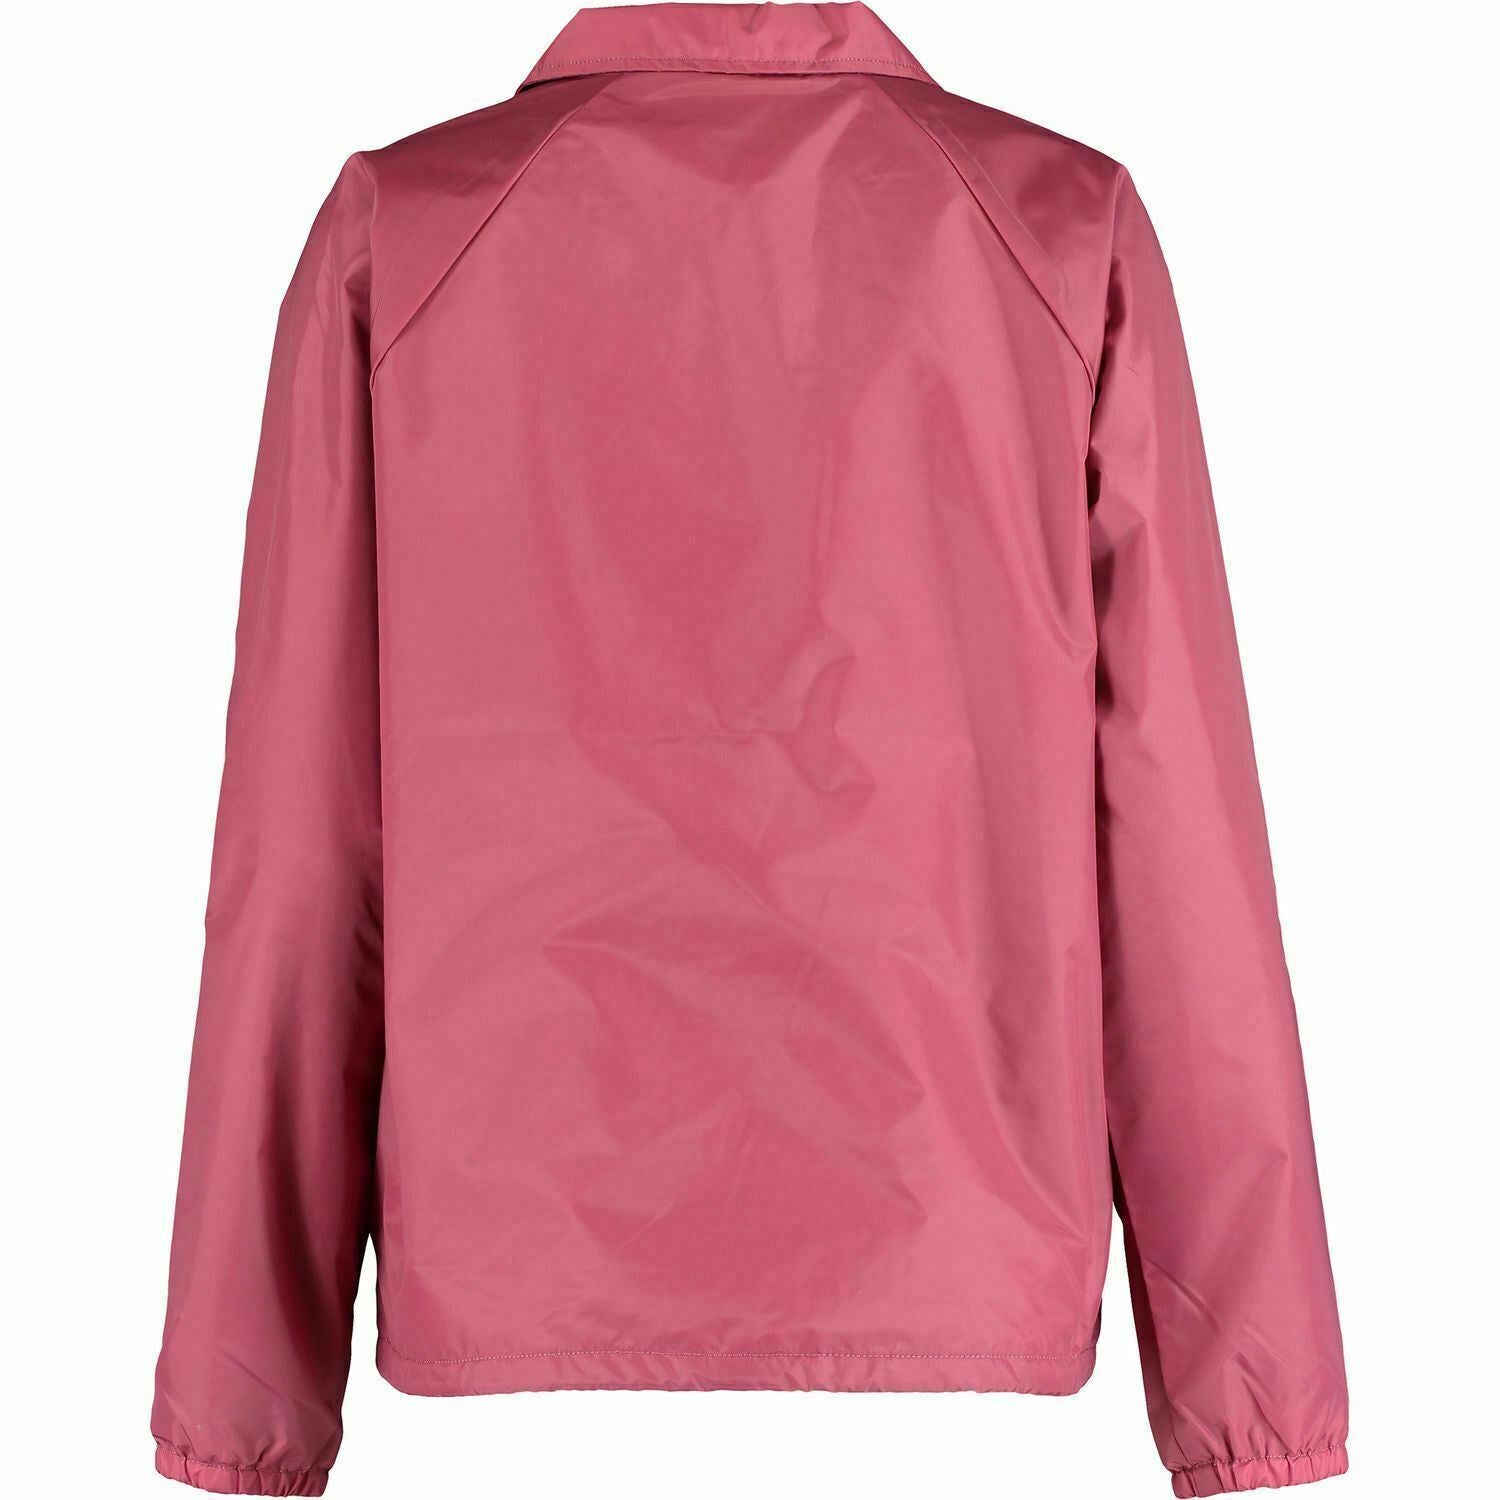 VANS Women's COACH Lightweight Jacket, Dry Rose, size S /size M /size L